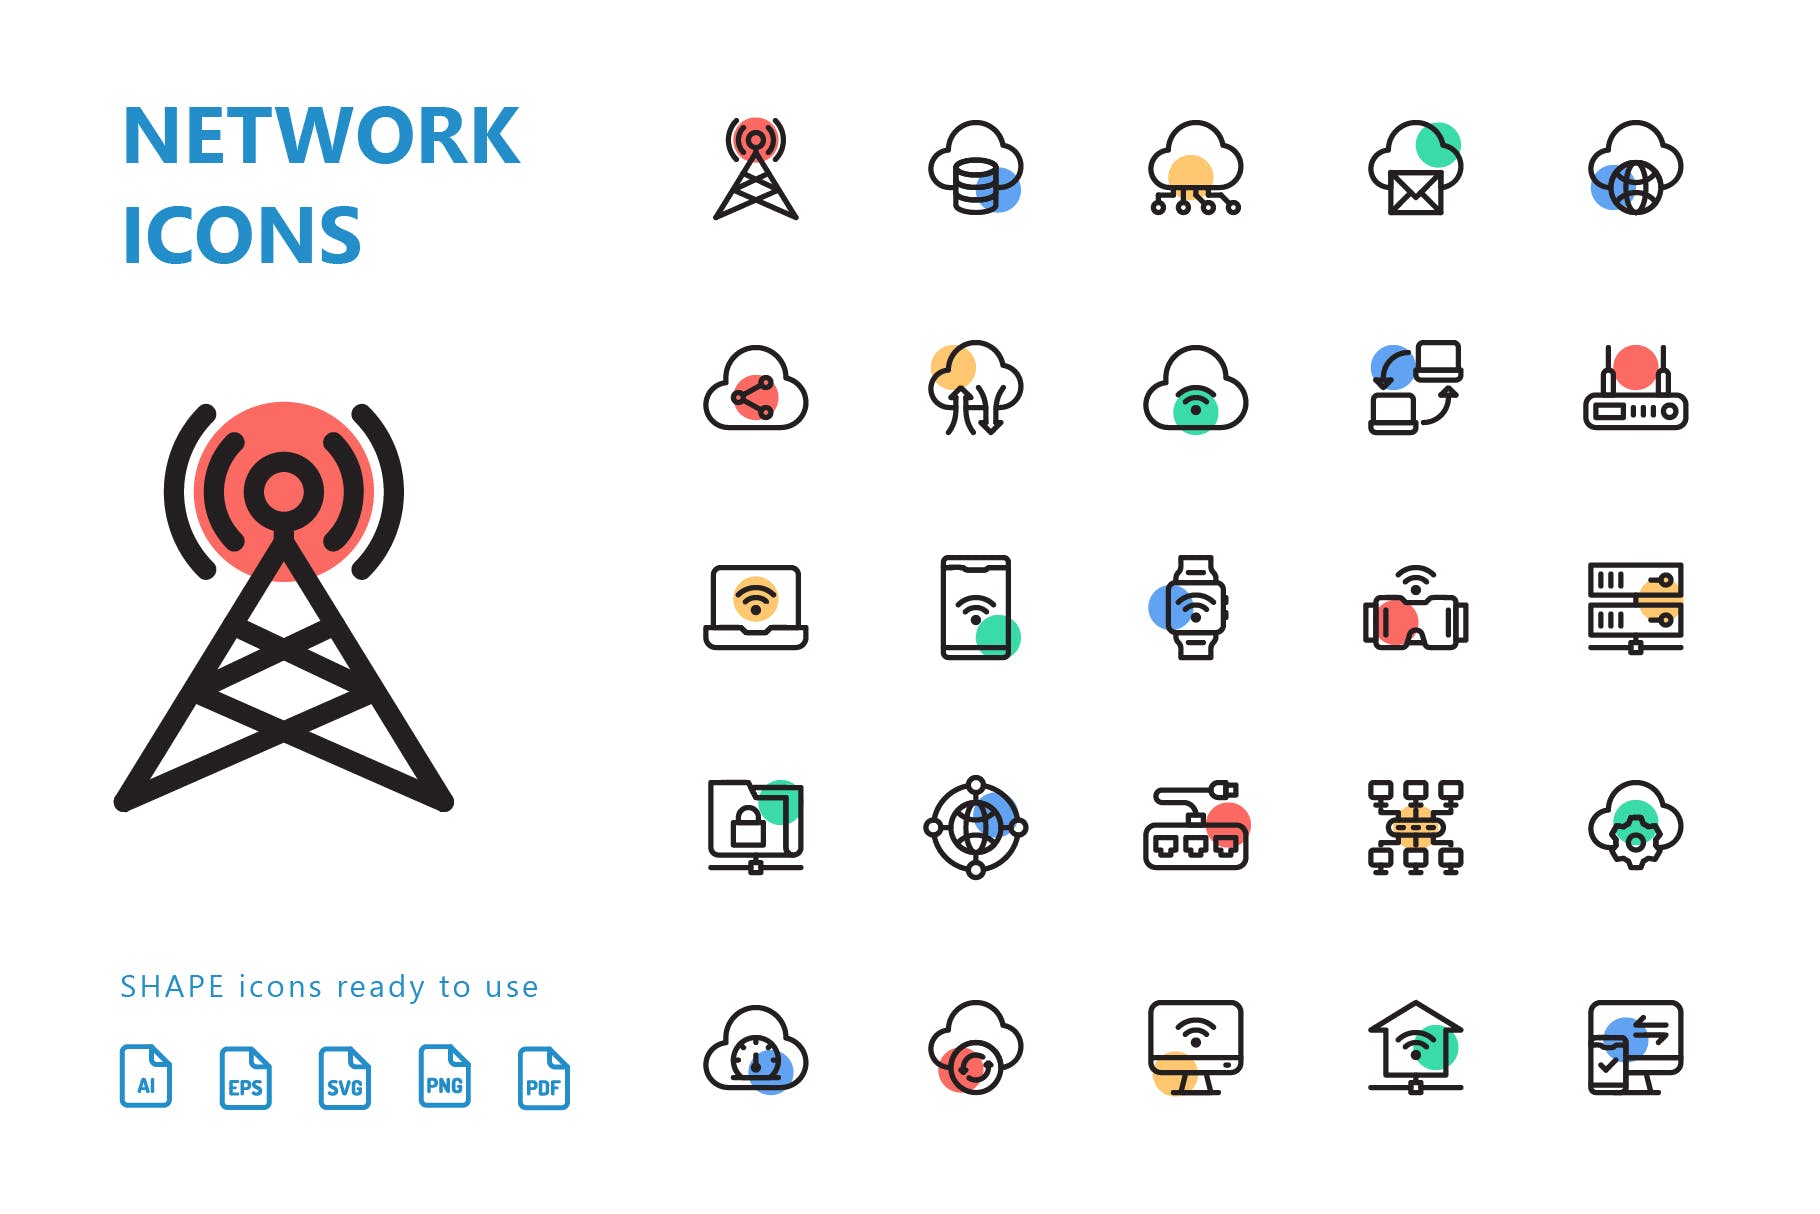 网络科技主题彩色圆点矢量素材库精选图标 Network Shape Icons插图(1)